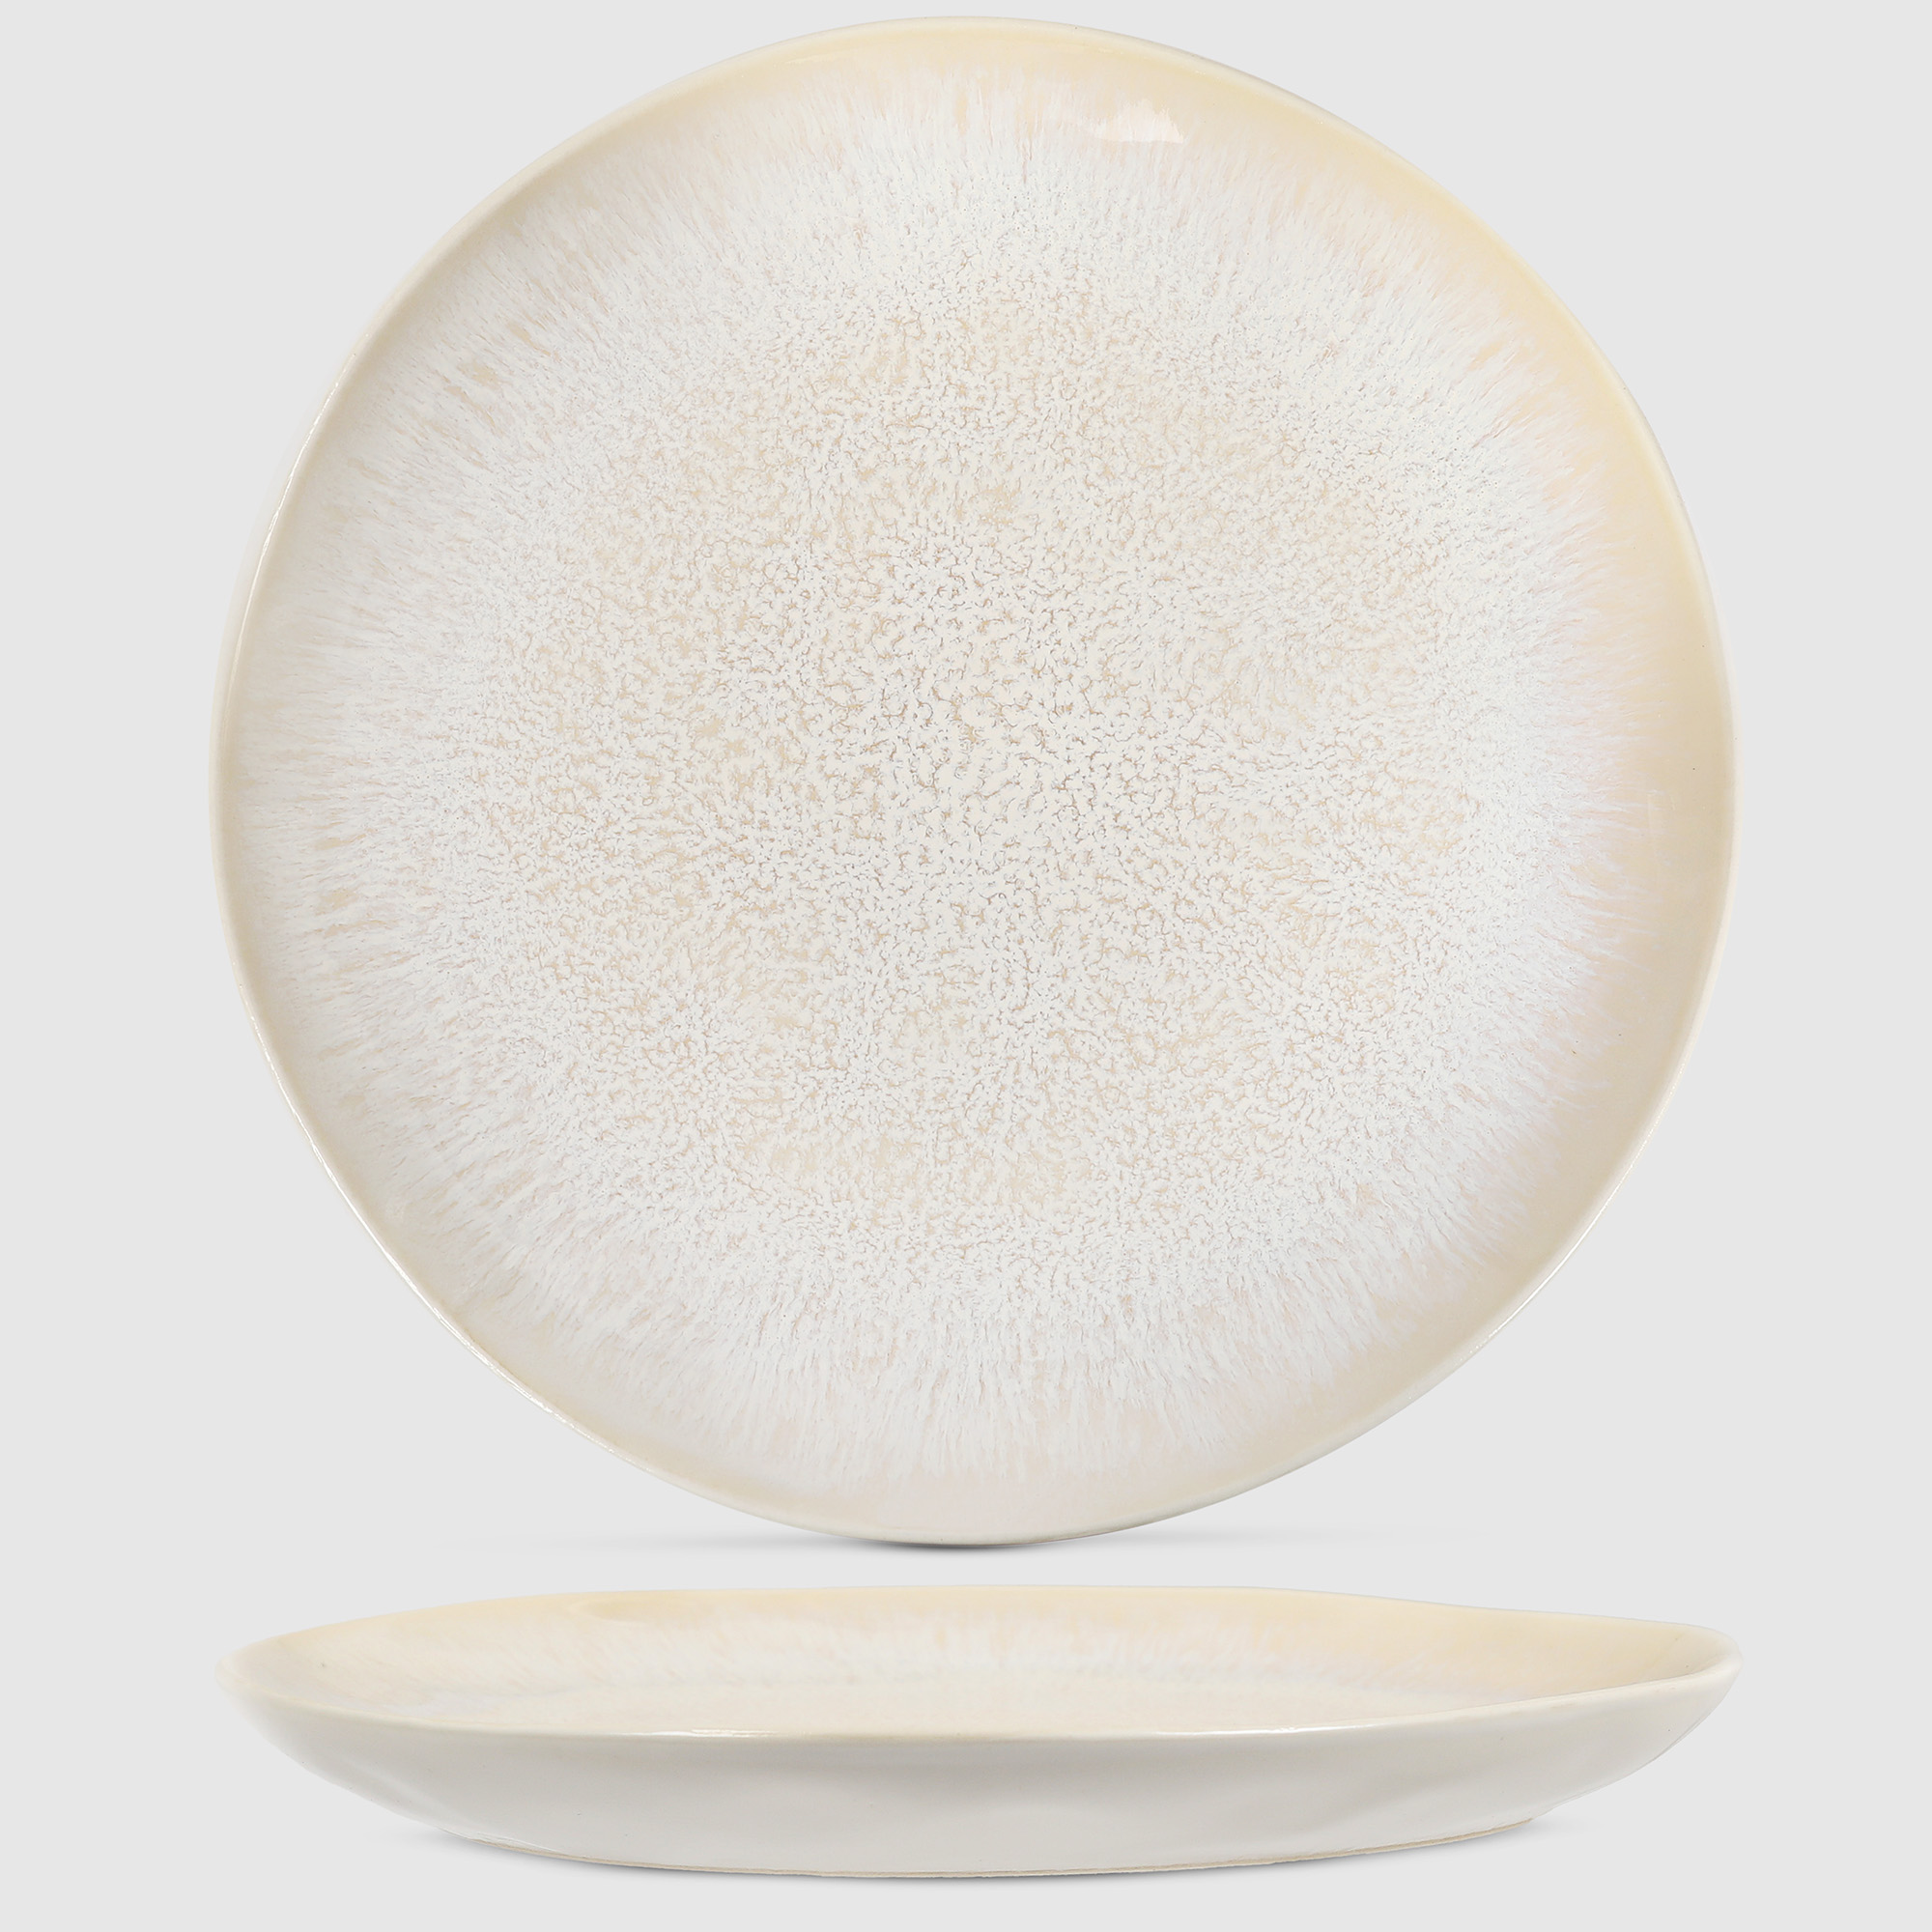 фото Набор керамической посуды white rabbit глянец 16 предметов